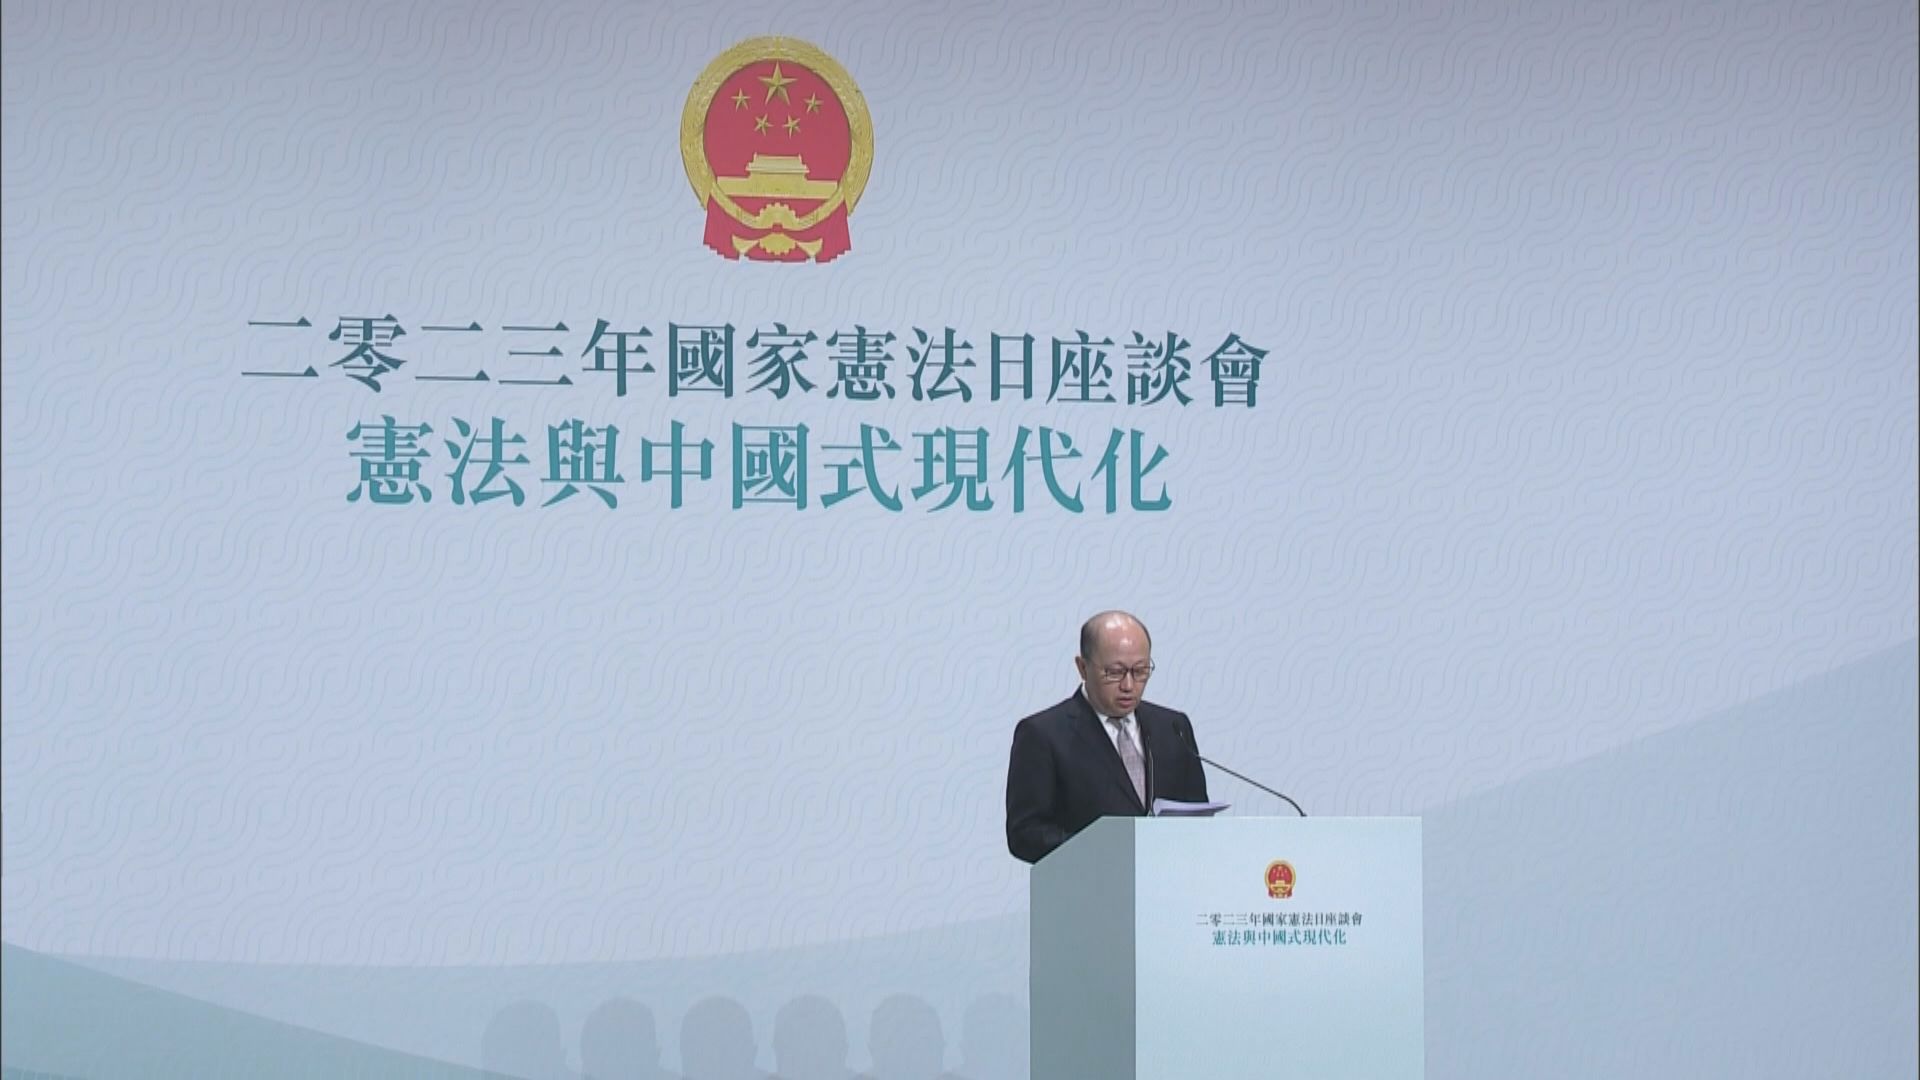 鄭雁雄︰全面實施憲法才能讓香港保持長期繁榮穩定